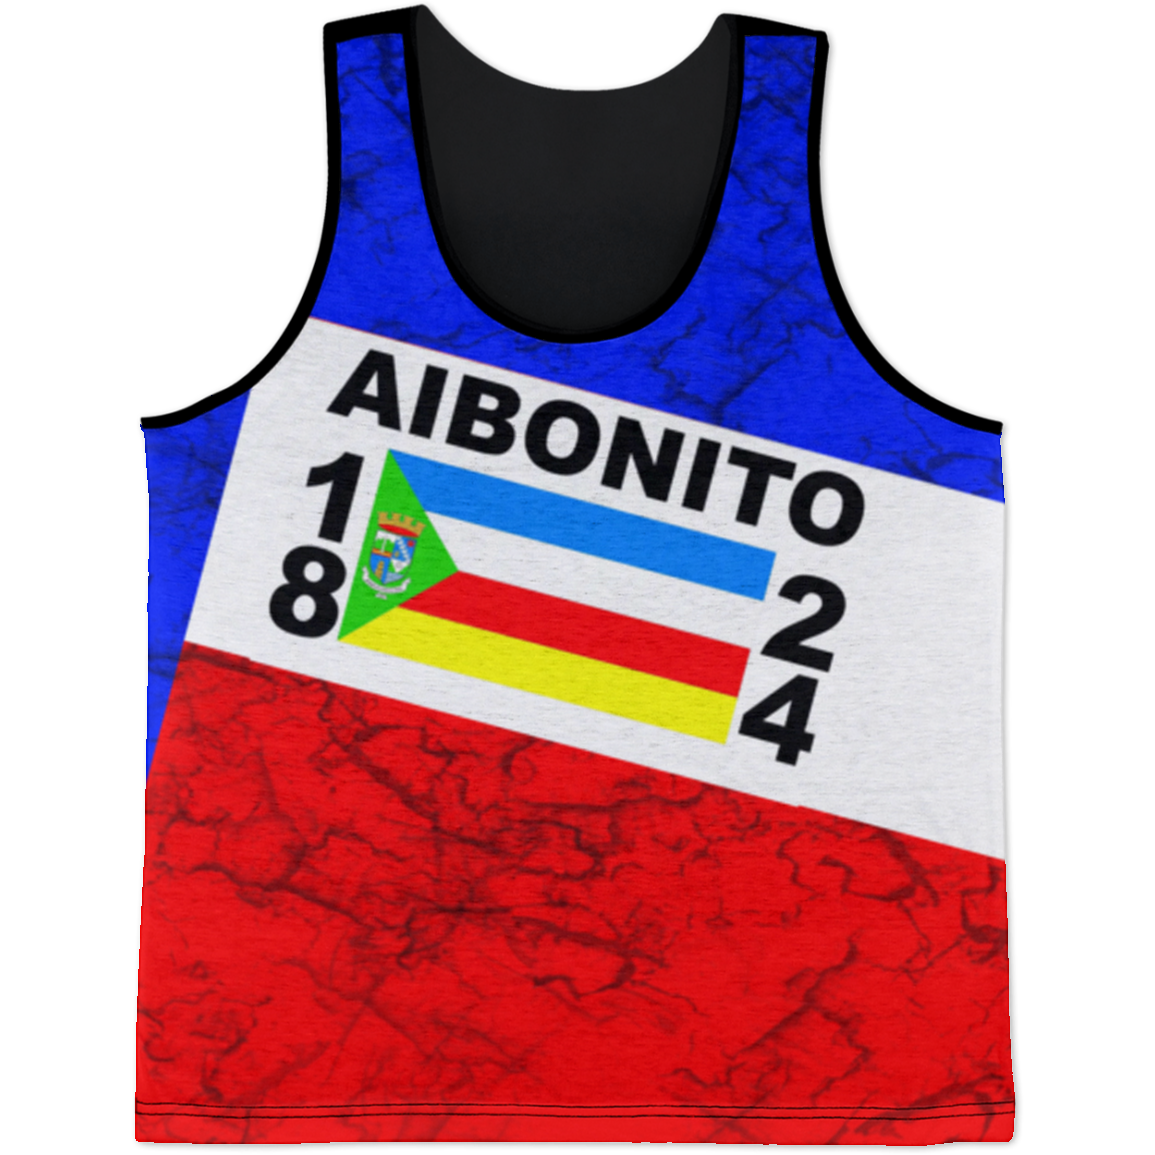 Aibonito Tank Top - Puerto Rican Pride